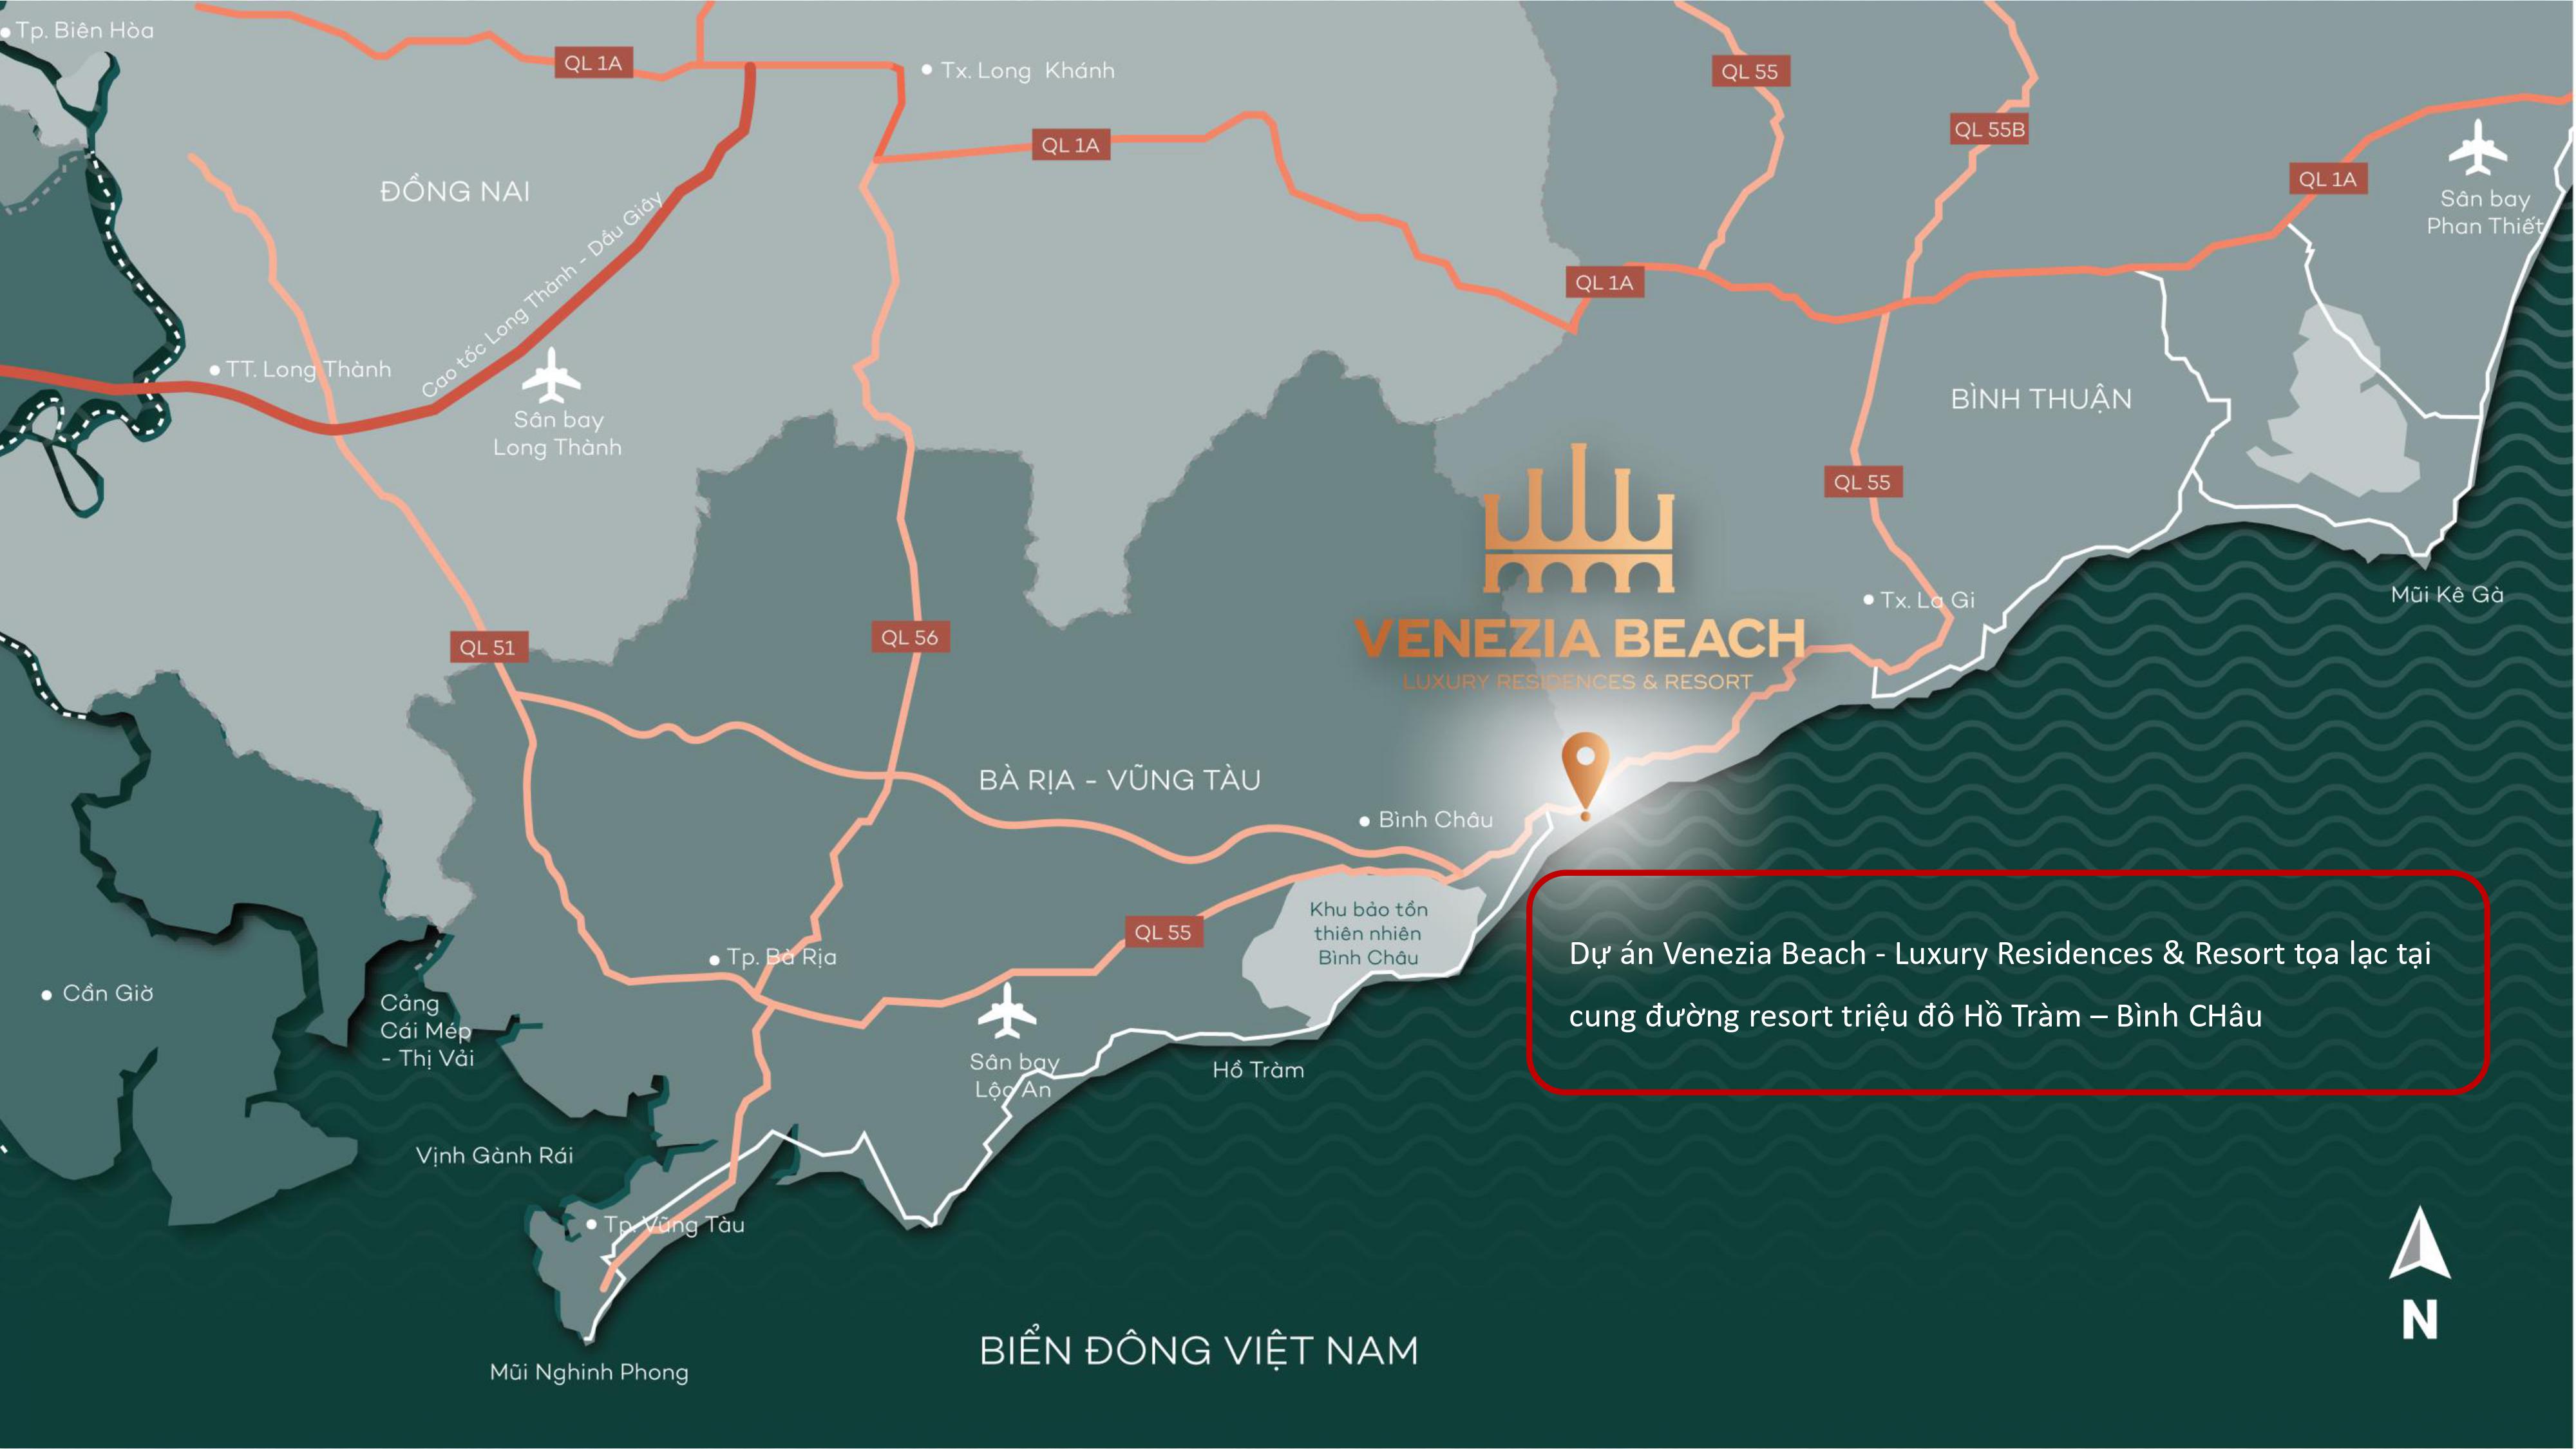 Khu vực ven biển phía Nam đang phát triển rầm rộ các dự án đô thị biển